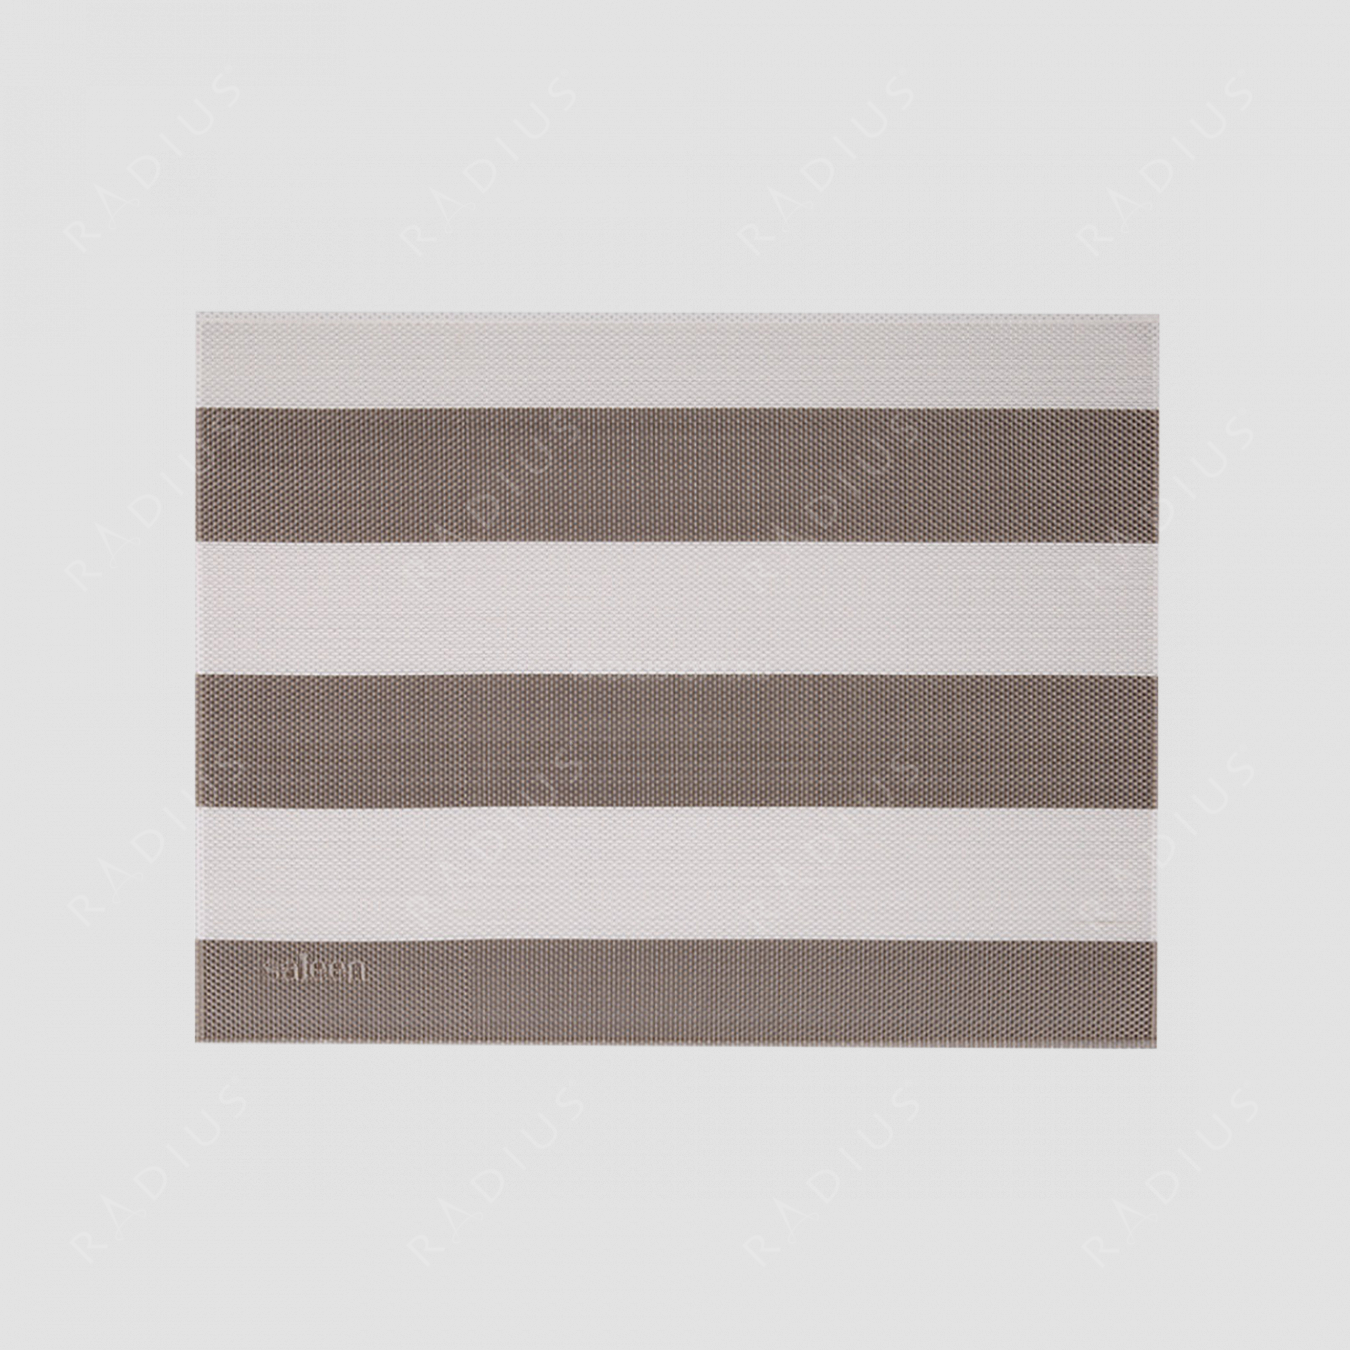 Салфетка подстановочная, винил, 32х42 см, цвет бежевый / белый, Stripes, серия Saleen, Westmark, Германия